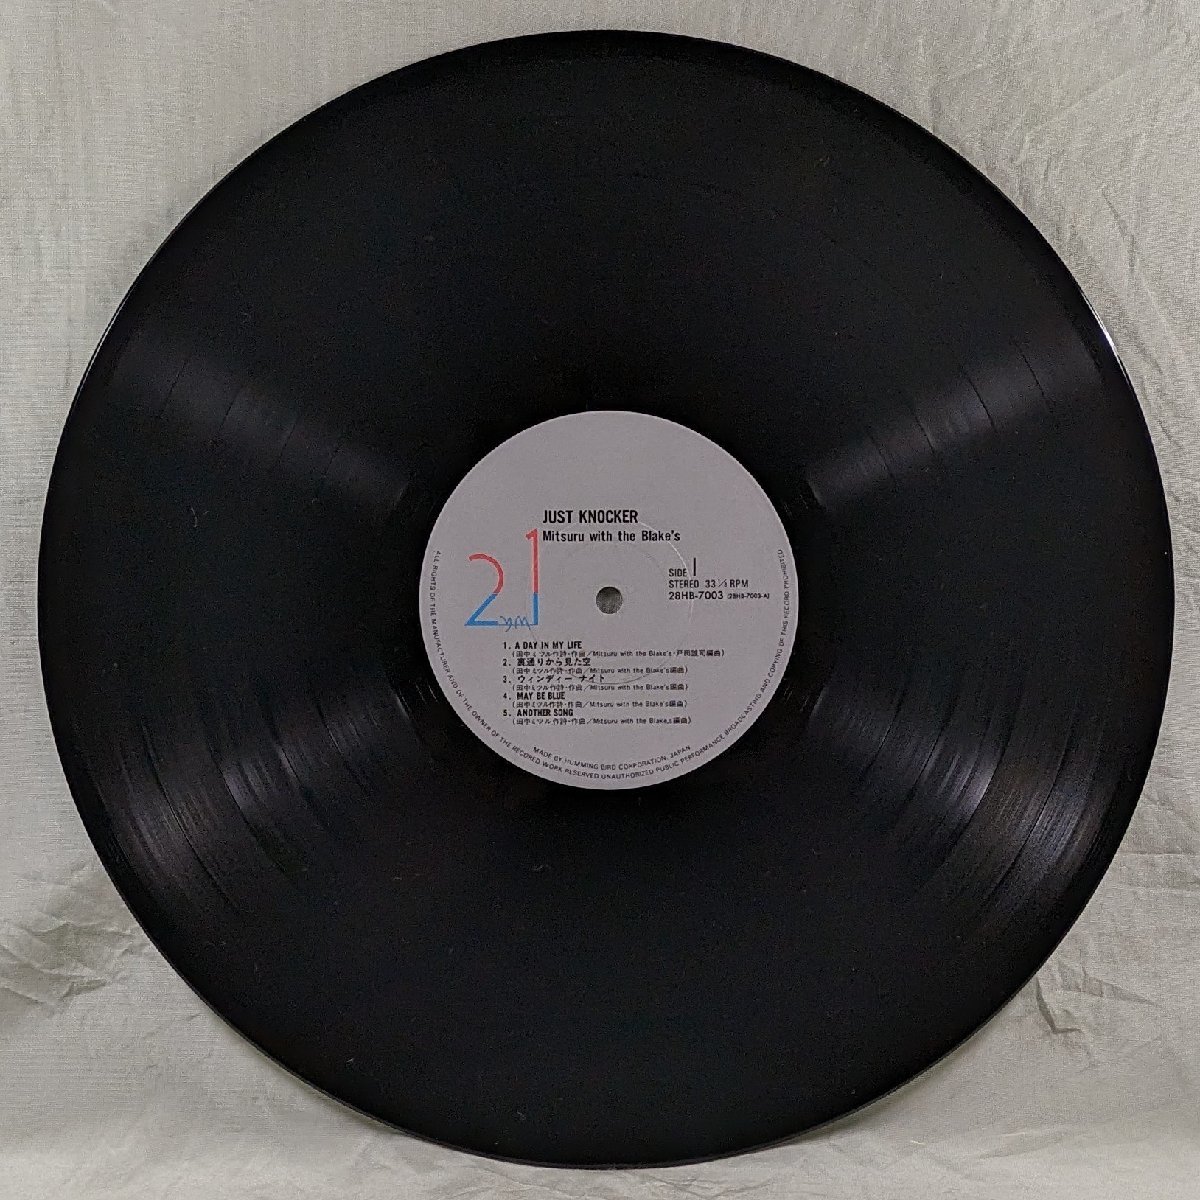 中古LP「JUST KNOCKER / ジャスト・ノッカー」MITSURU WITH THE BLAKE'S / 田中ミツル_画像4